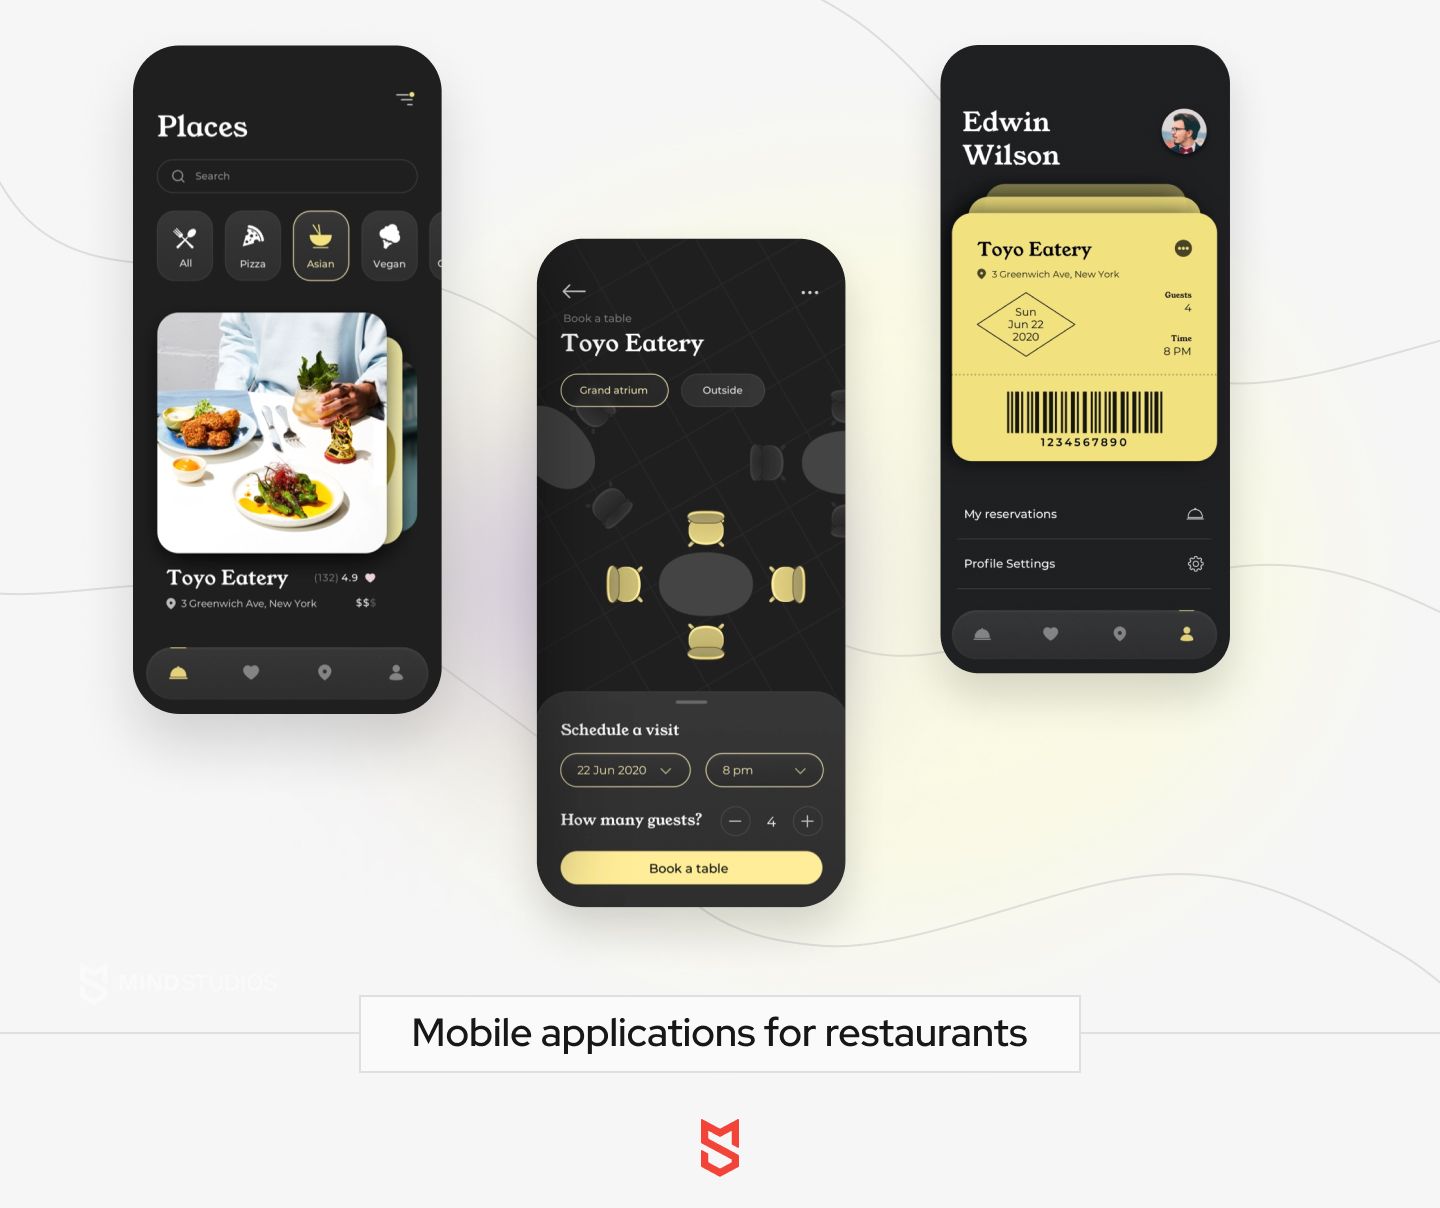 Mobile applications for restaurants